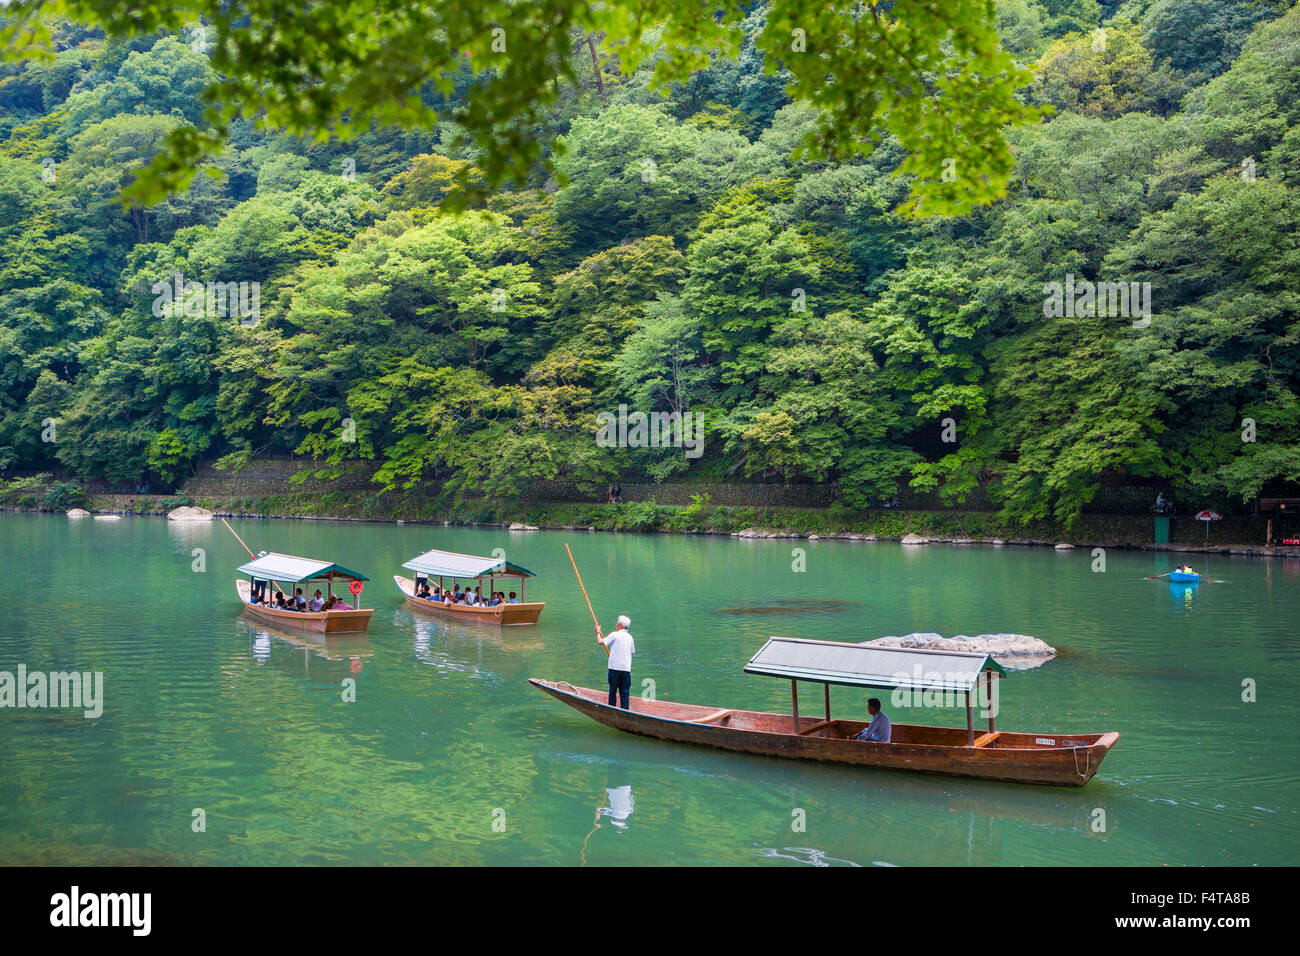 Le Japon, la ville de Kyoto, la montagne, la rivière Oi Arashiyama, voile Banque D'Images